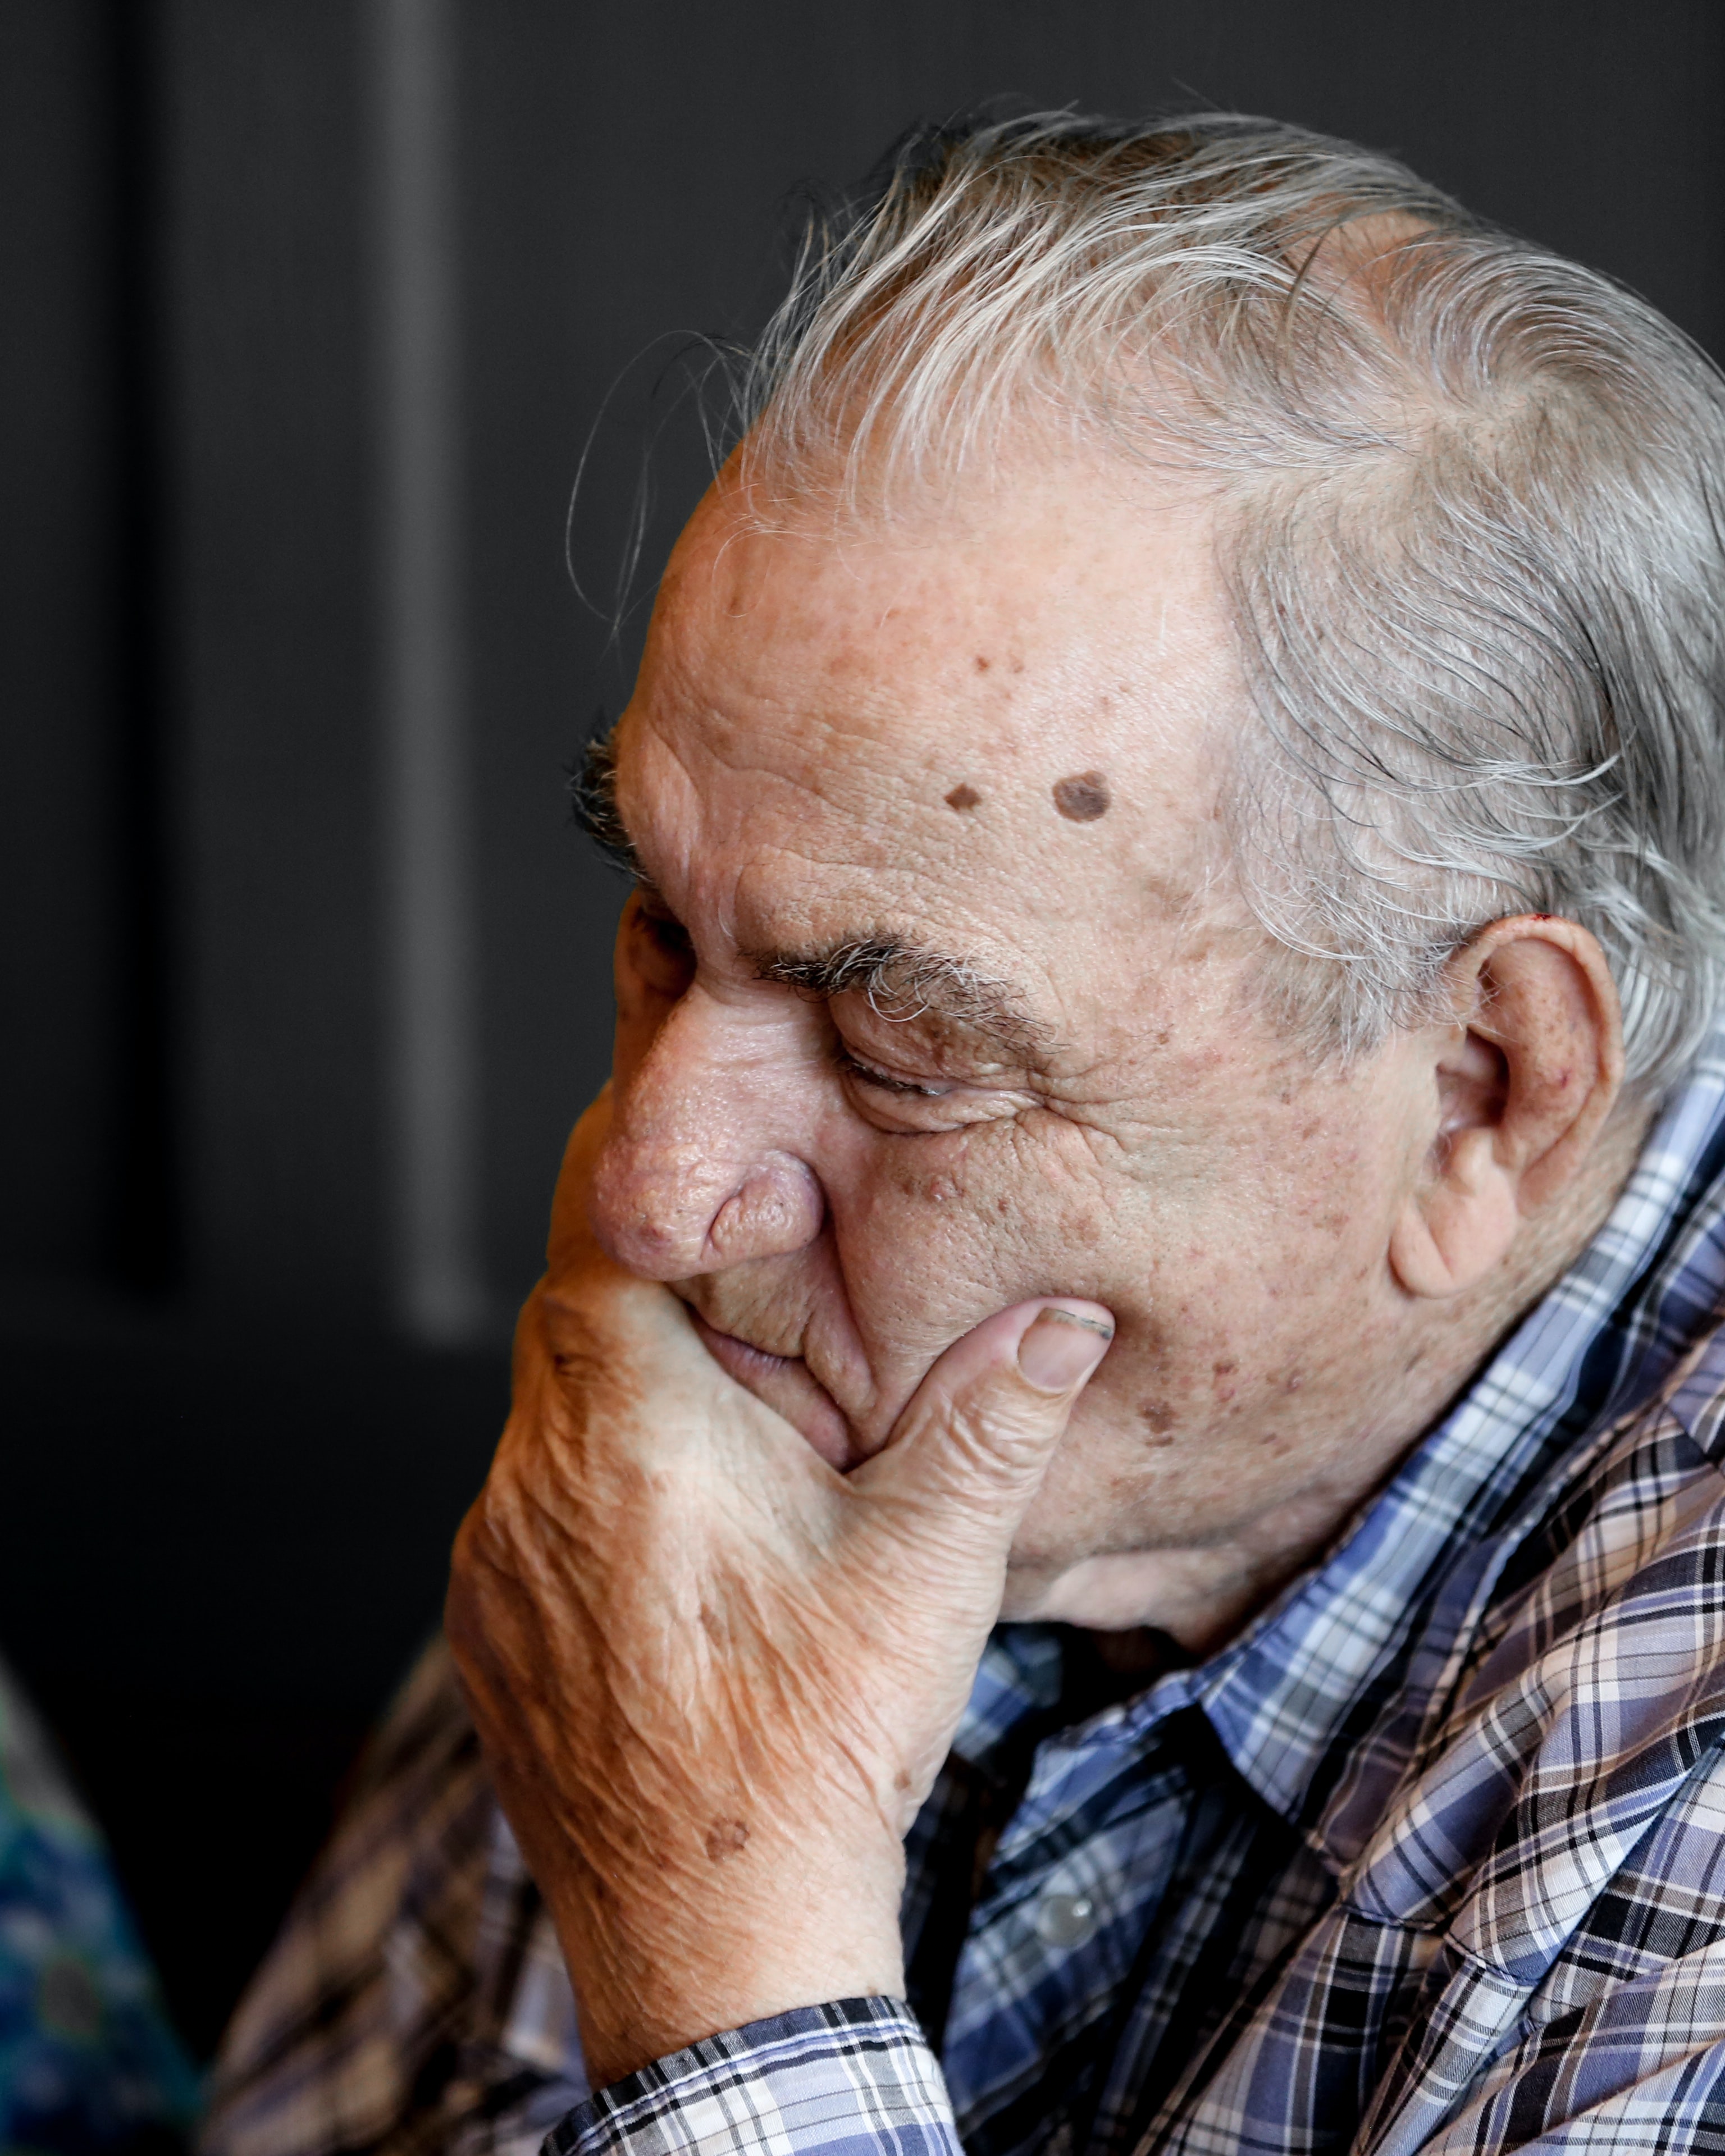 Las personas que más tarde desarrollaron la enfermedad de Alzheimer se desempeñaron peor que las personas sanas en tareas de resolución de problemas, tiempos de reacción, recordar listas de números, memoria prospectiva...